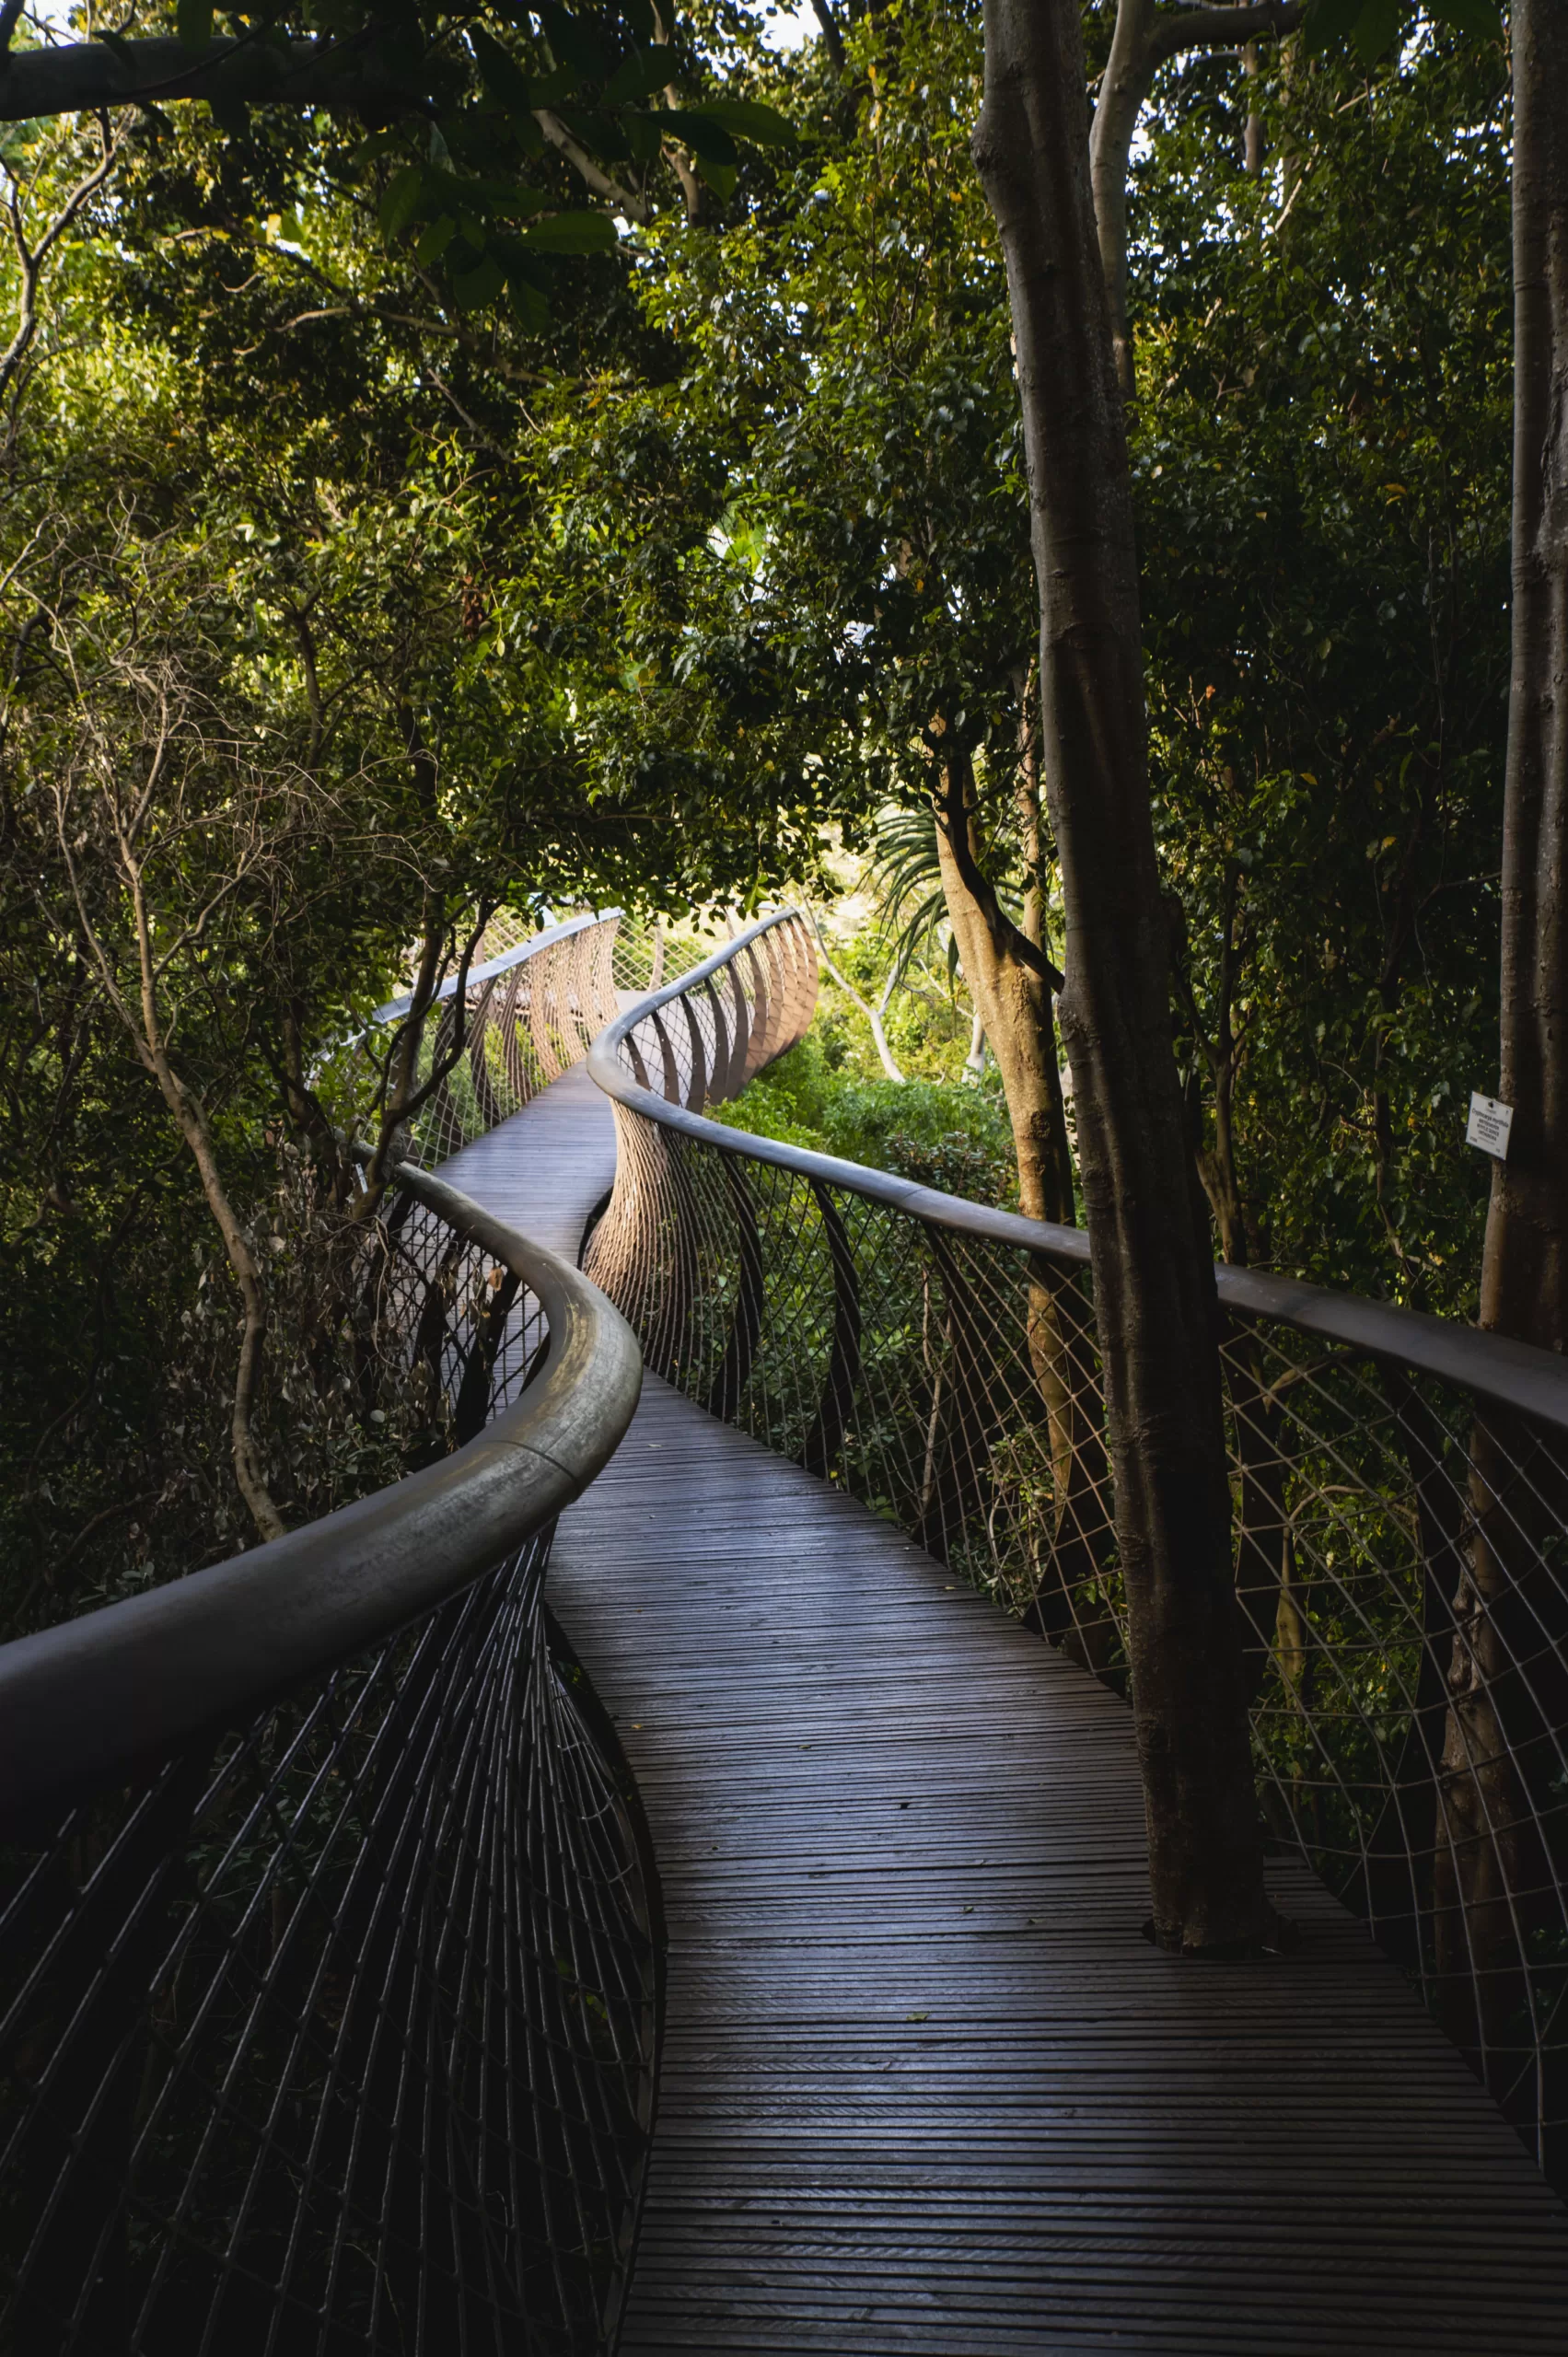 Jardín Botánico Nacional de Kirstenbosch.
Ciudad del Cabo, Sudáfrica
Foto de Riccardo Lopez